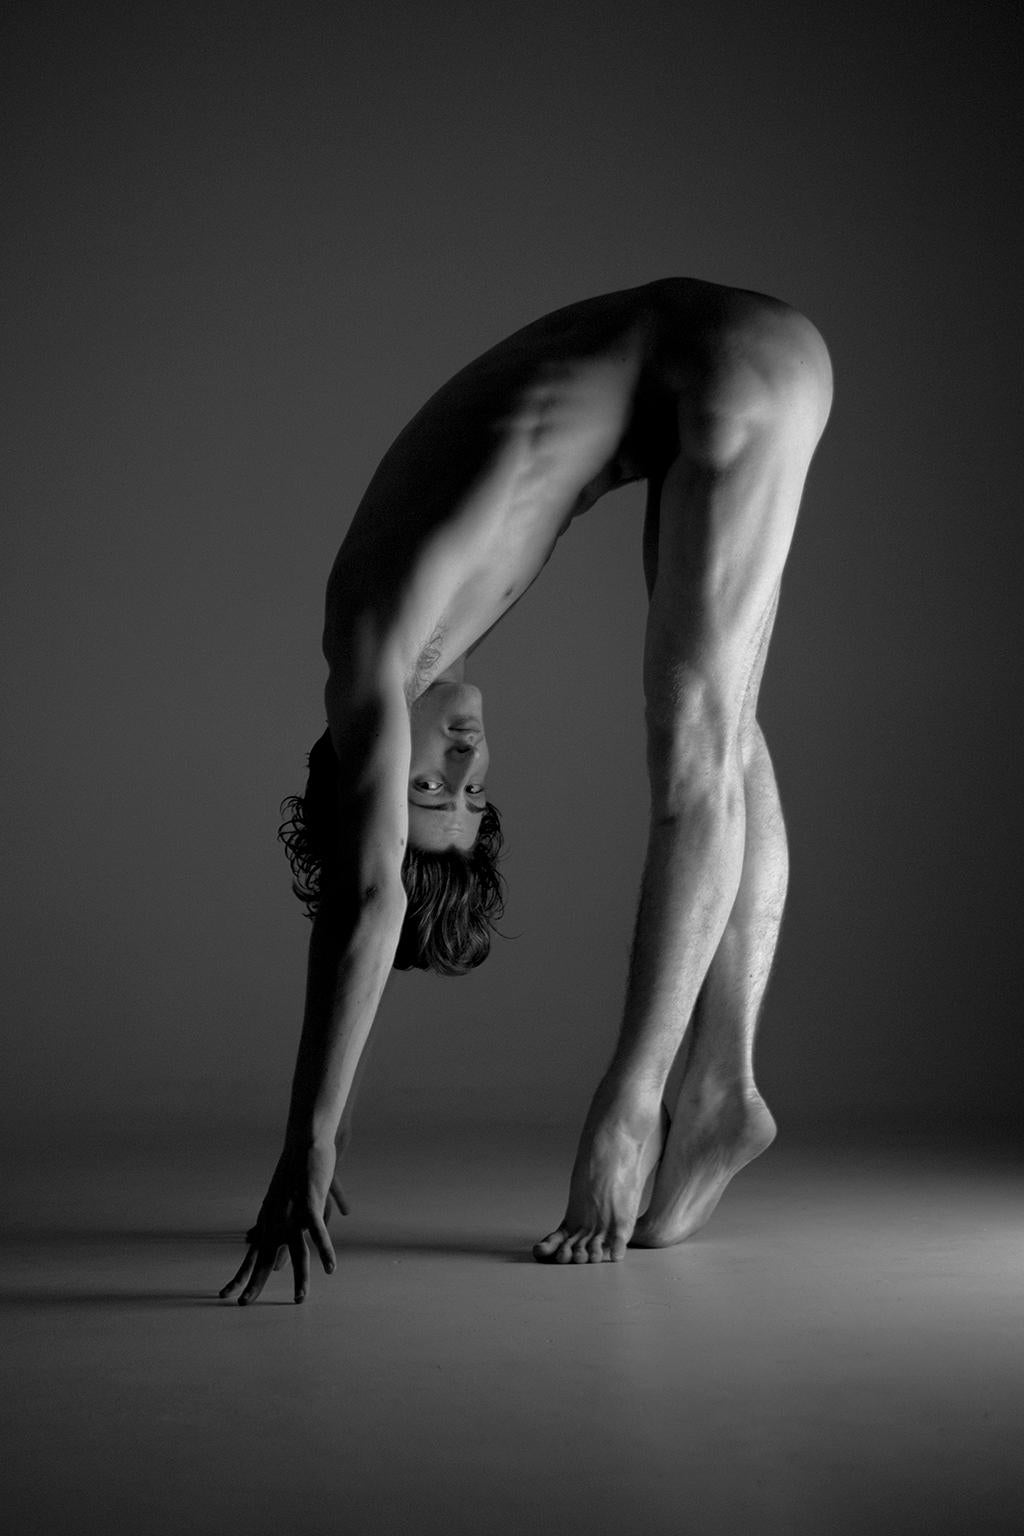 Black and White Photograph Ricky Cohete - Bailarin I. Le Bailarin, série. Danseur nu masculin. Photographie en noir et blanc